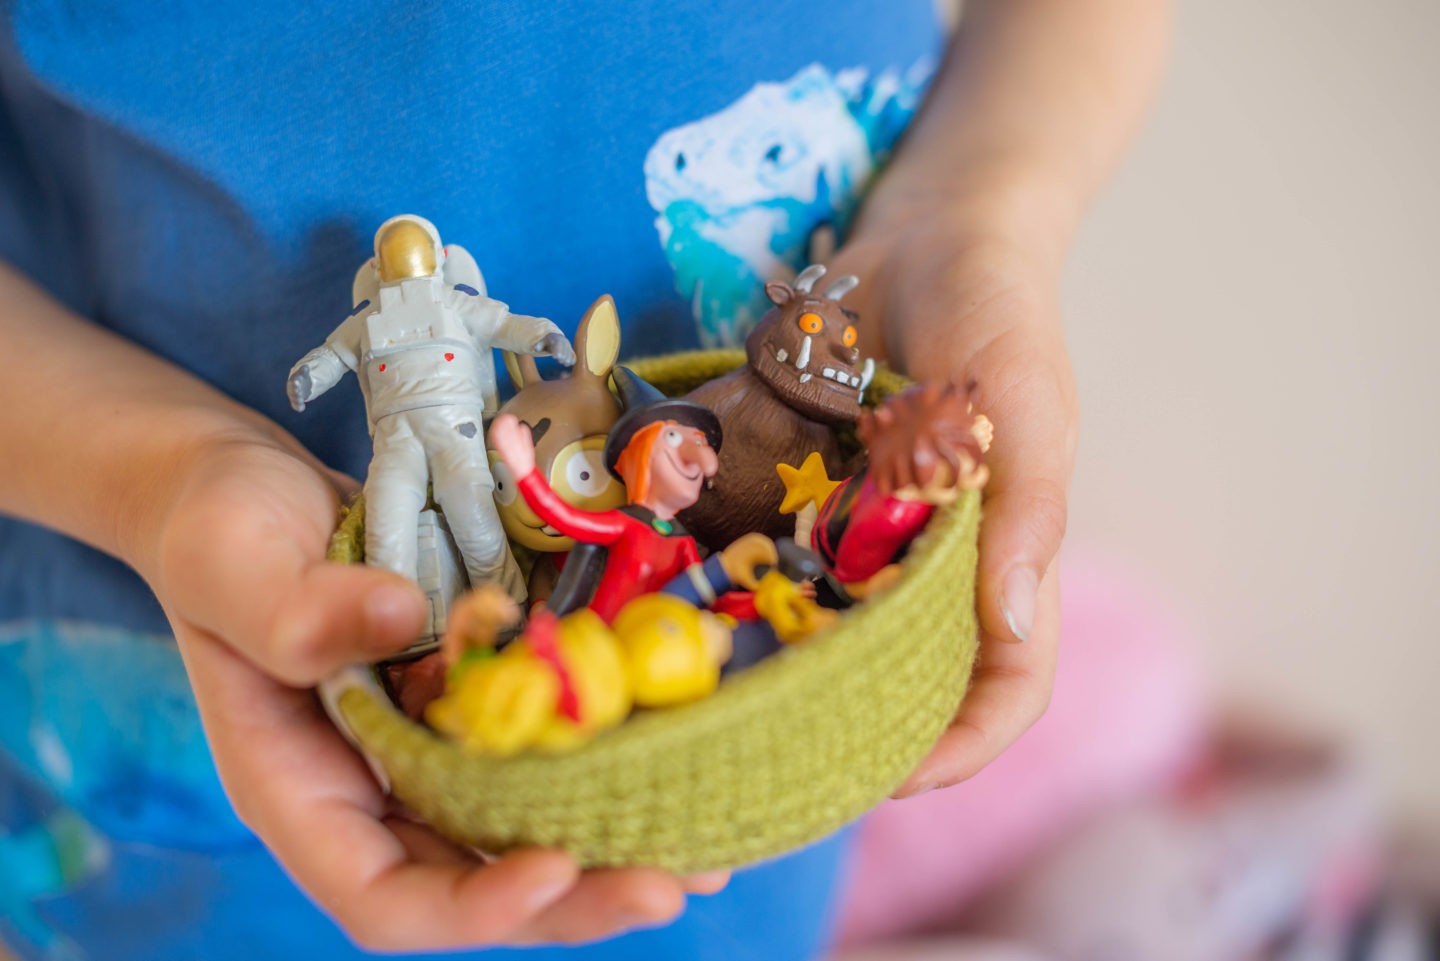 Toniebox Figures held in a basket by children's hands.